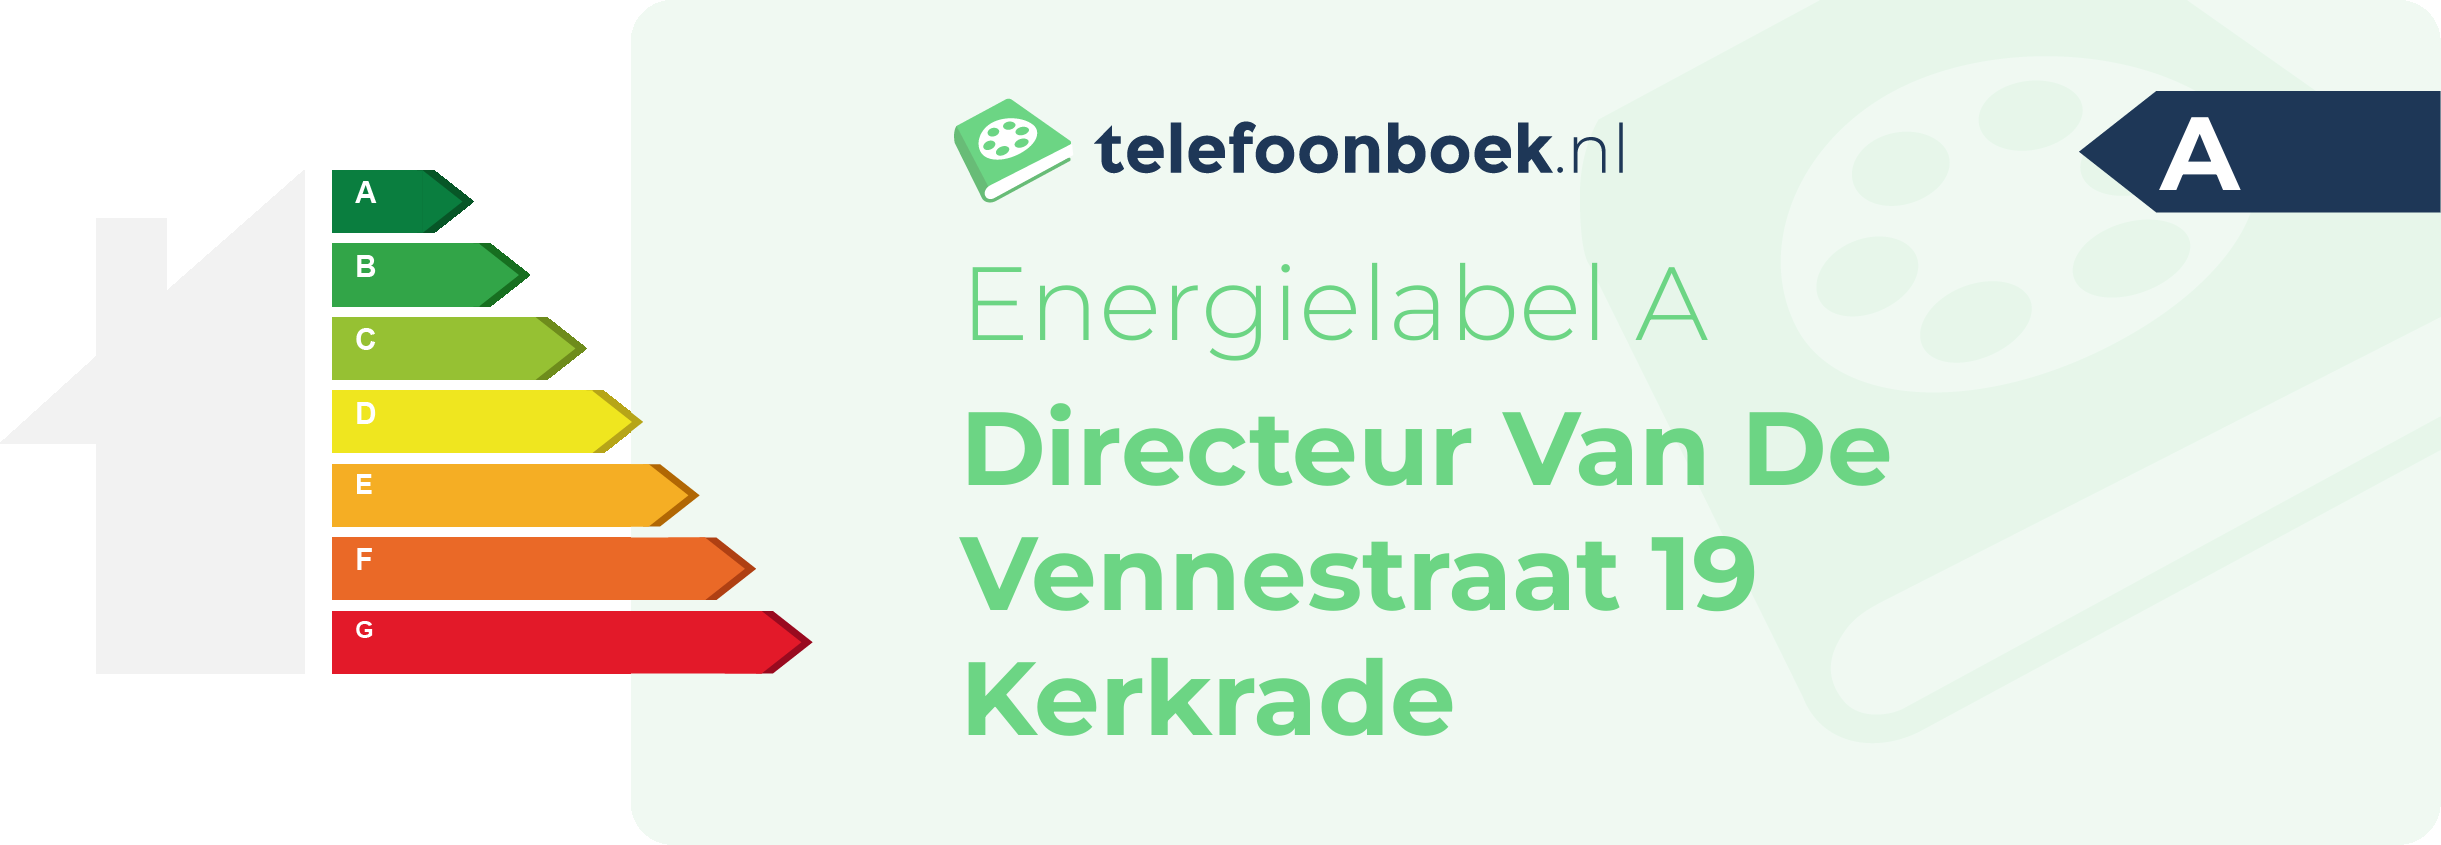 Energielabel Directeur Van De Vennestraat 19 Kerkrade